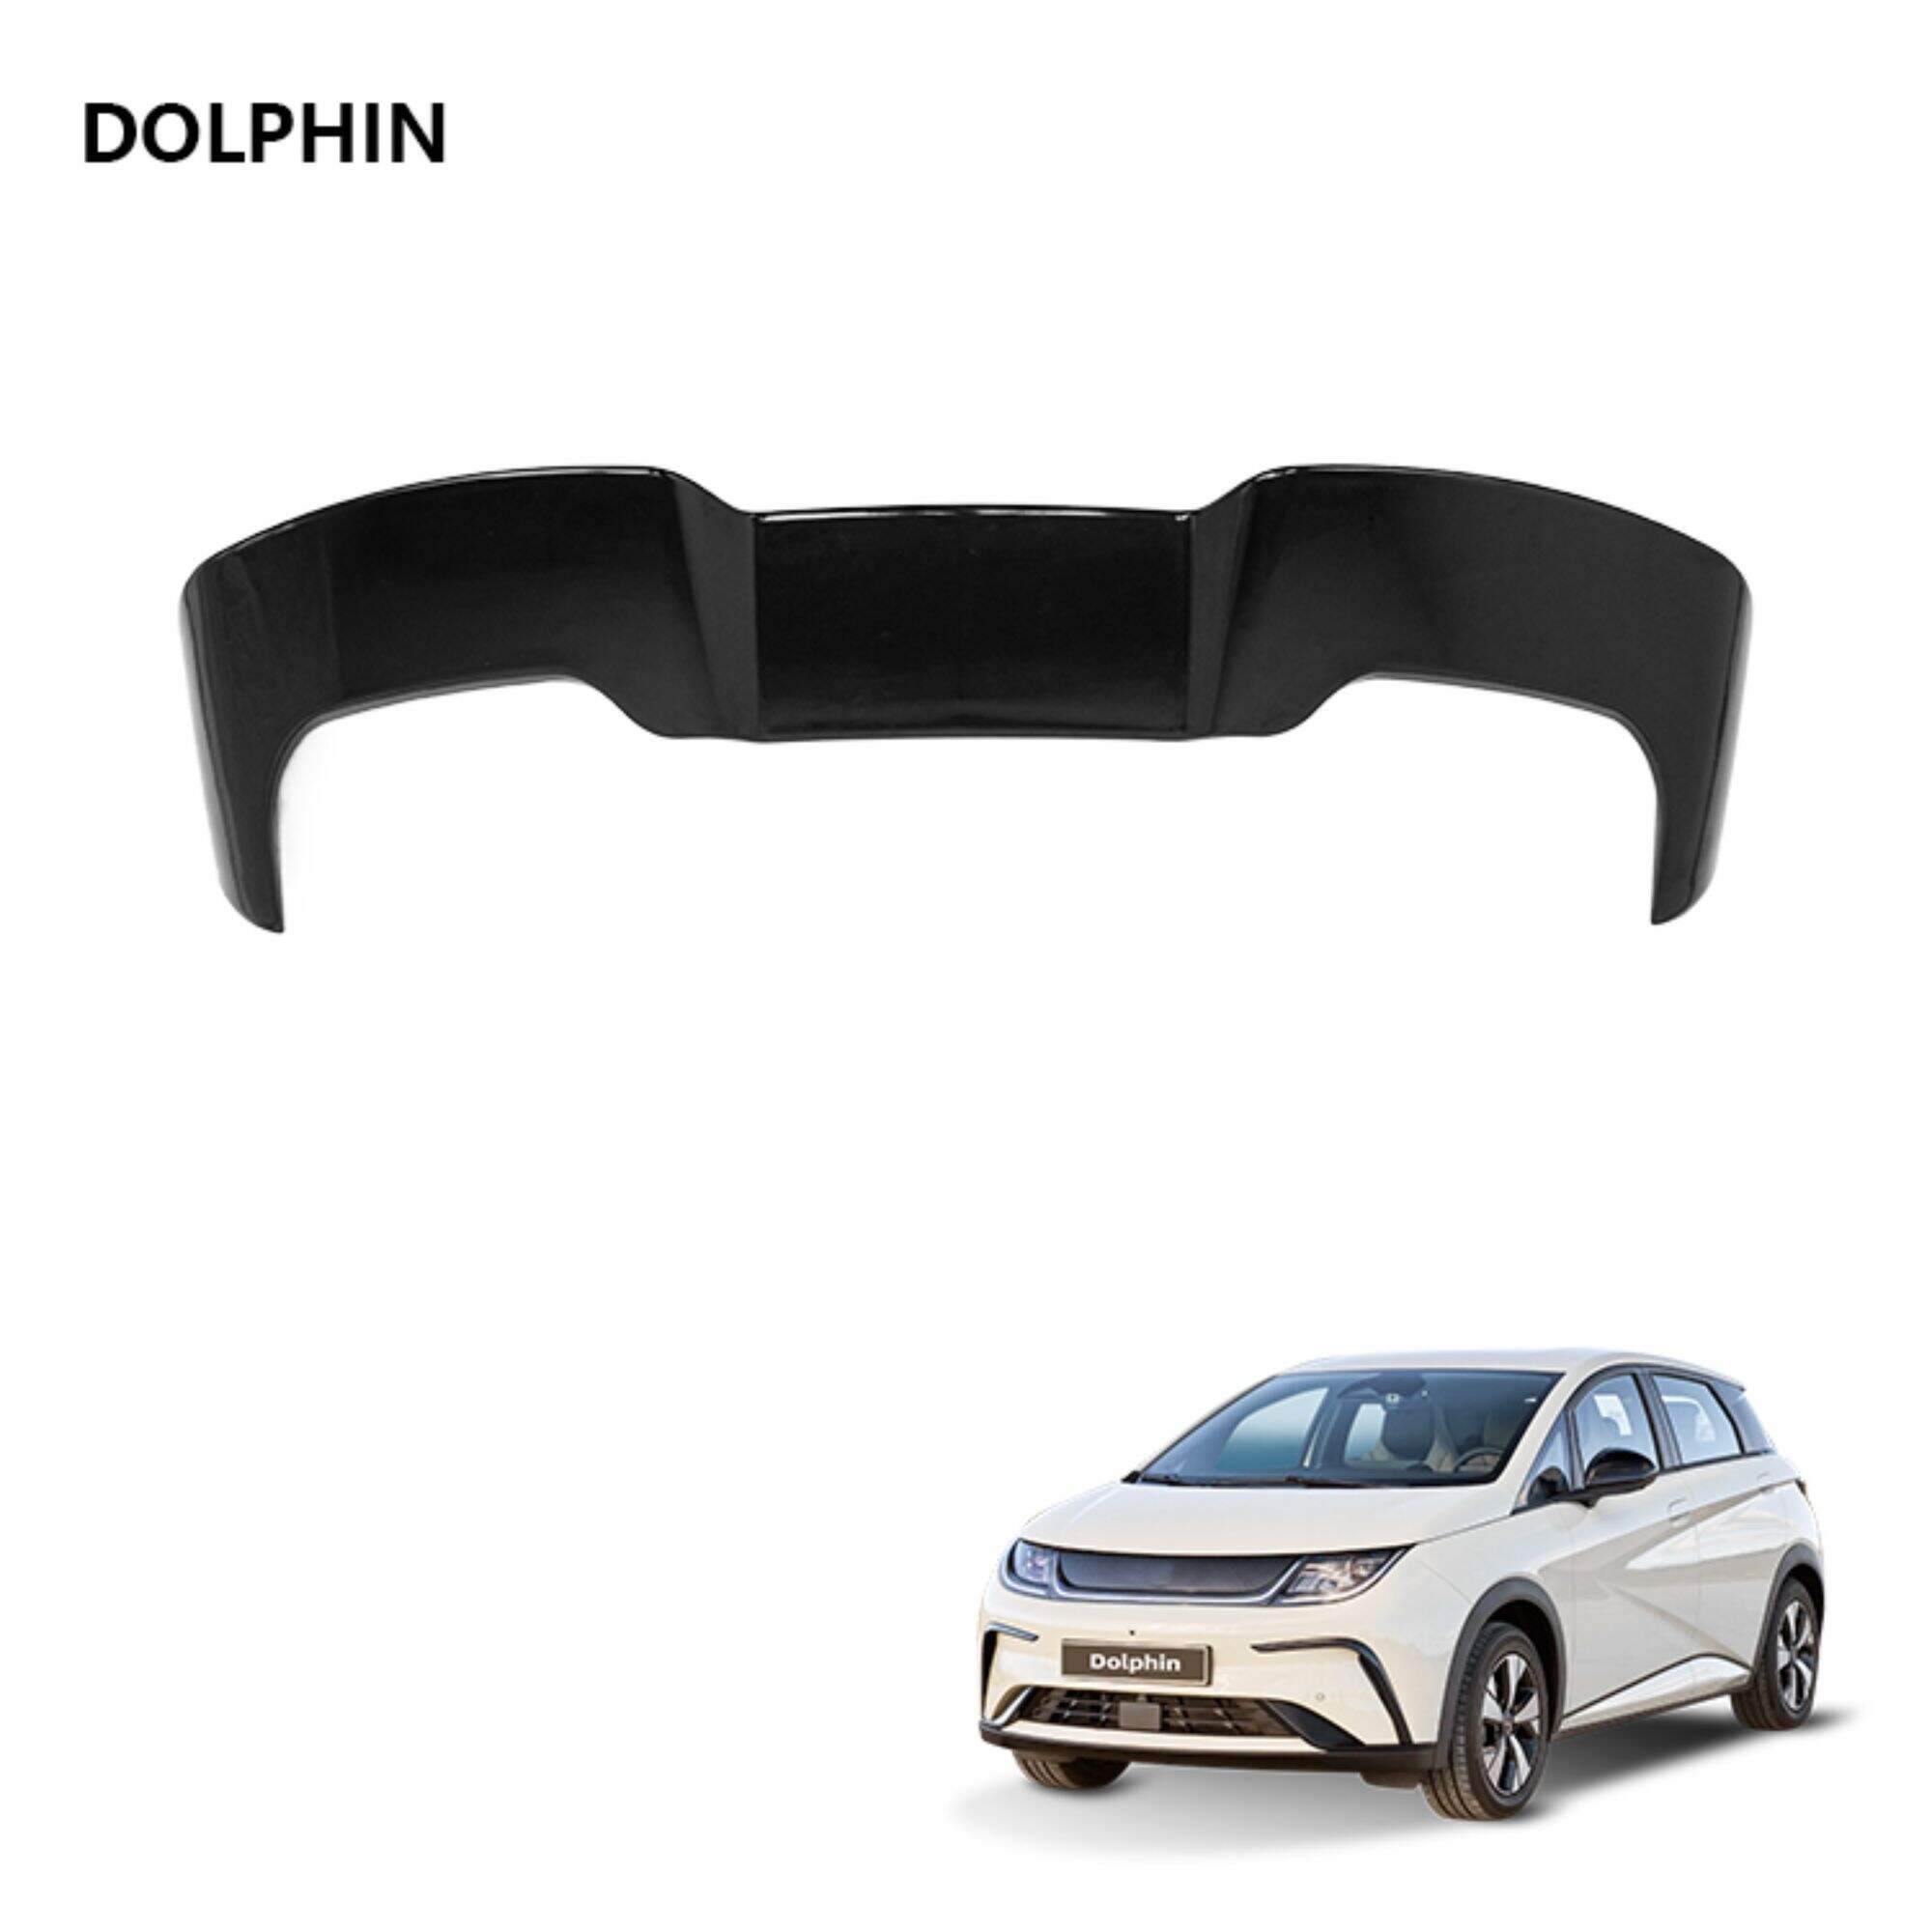 Dolphin Elektroauto-Außenzubehör, Karbonfasermuster, Workblank-Kofferraumspoiler, Universal-Auto-Heckspoiler für Dachflügel, für BYD Dolphin